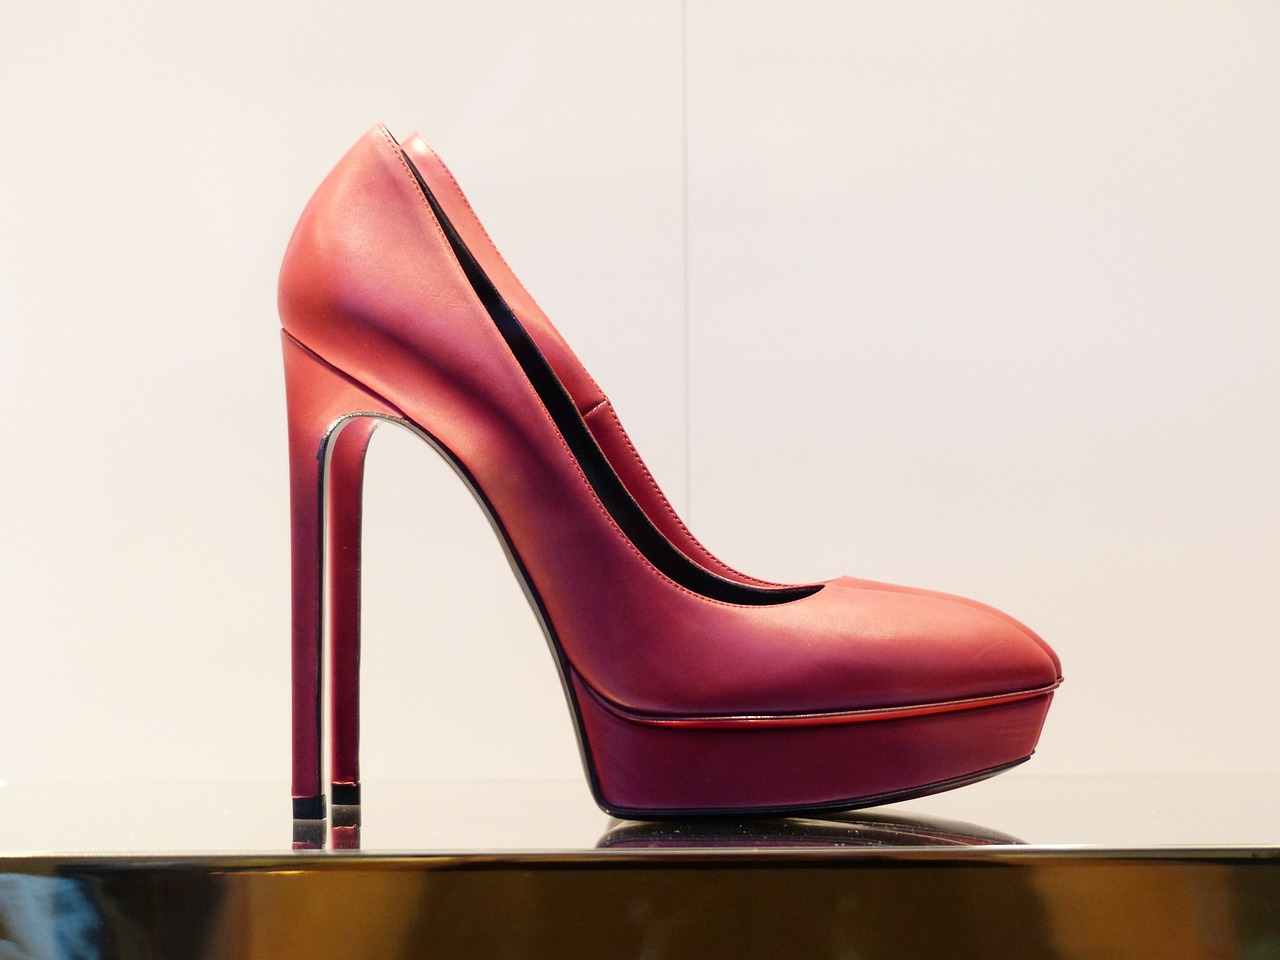 shoe high heeled shoe pumps free photo